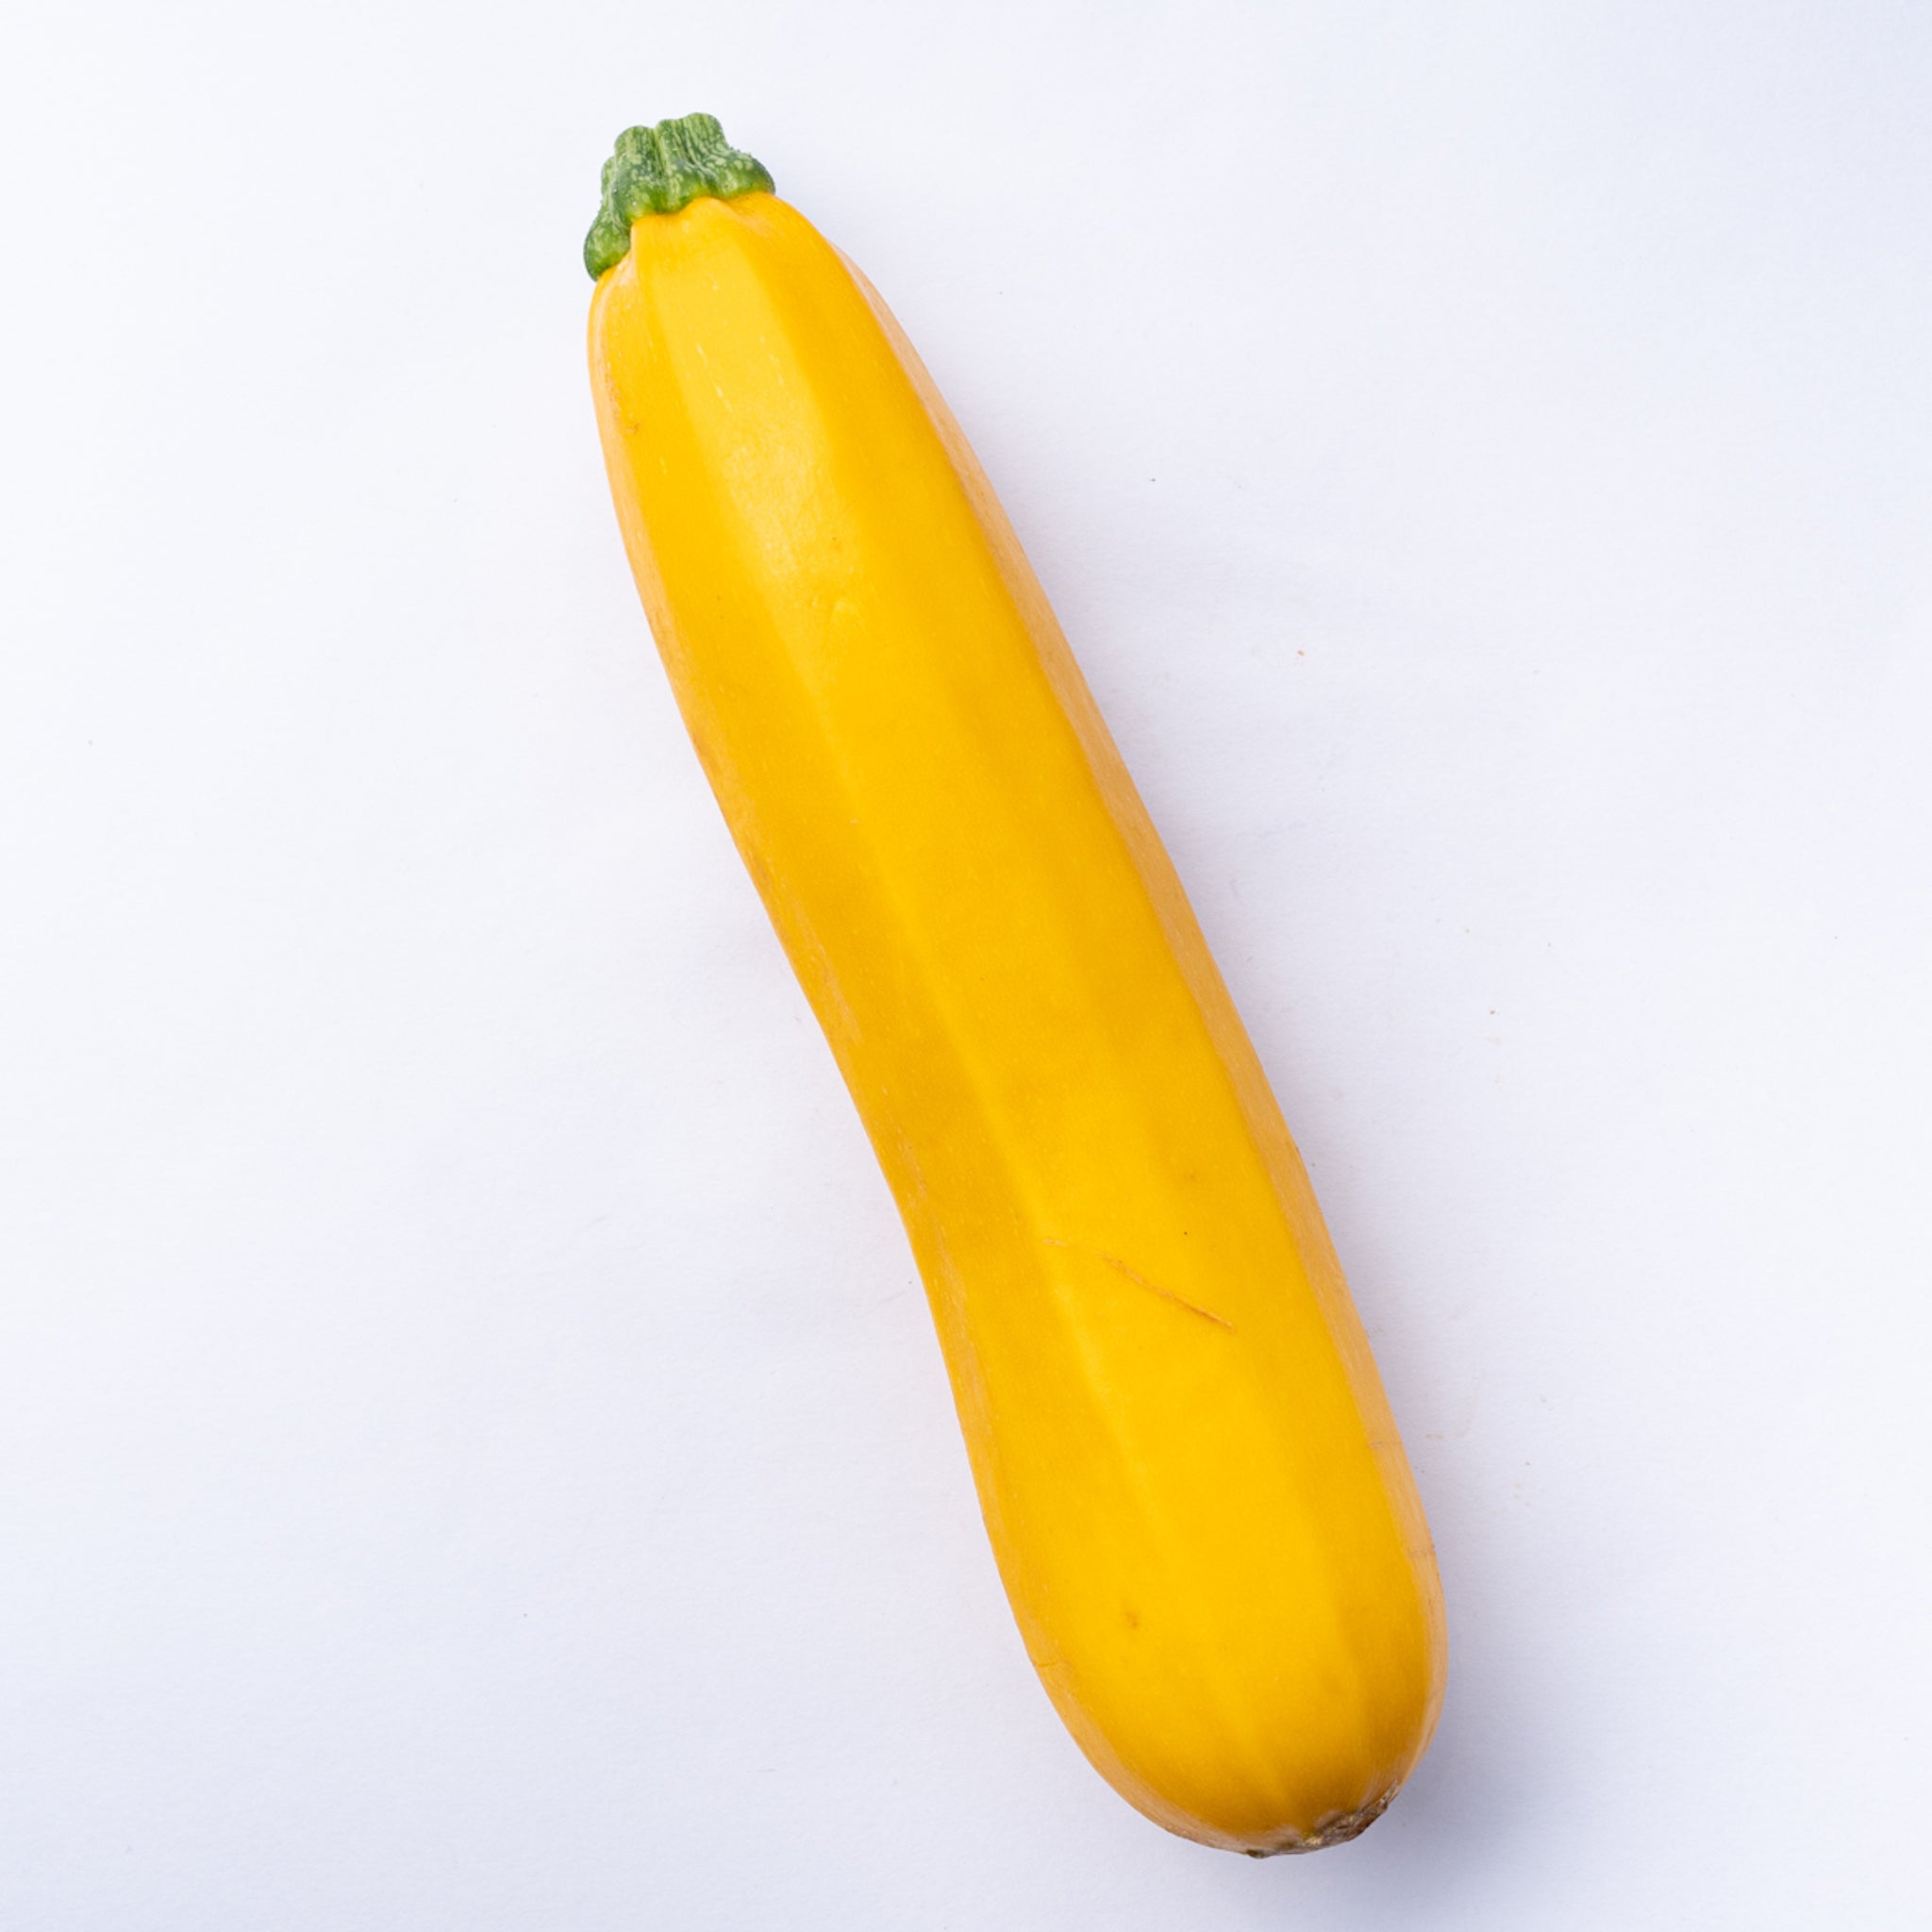 A yellow zucchini.